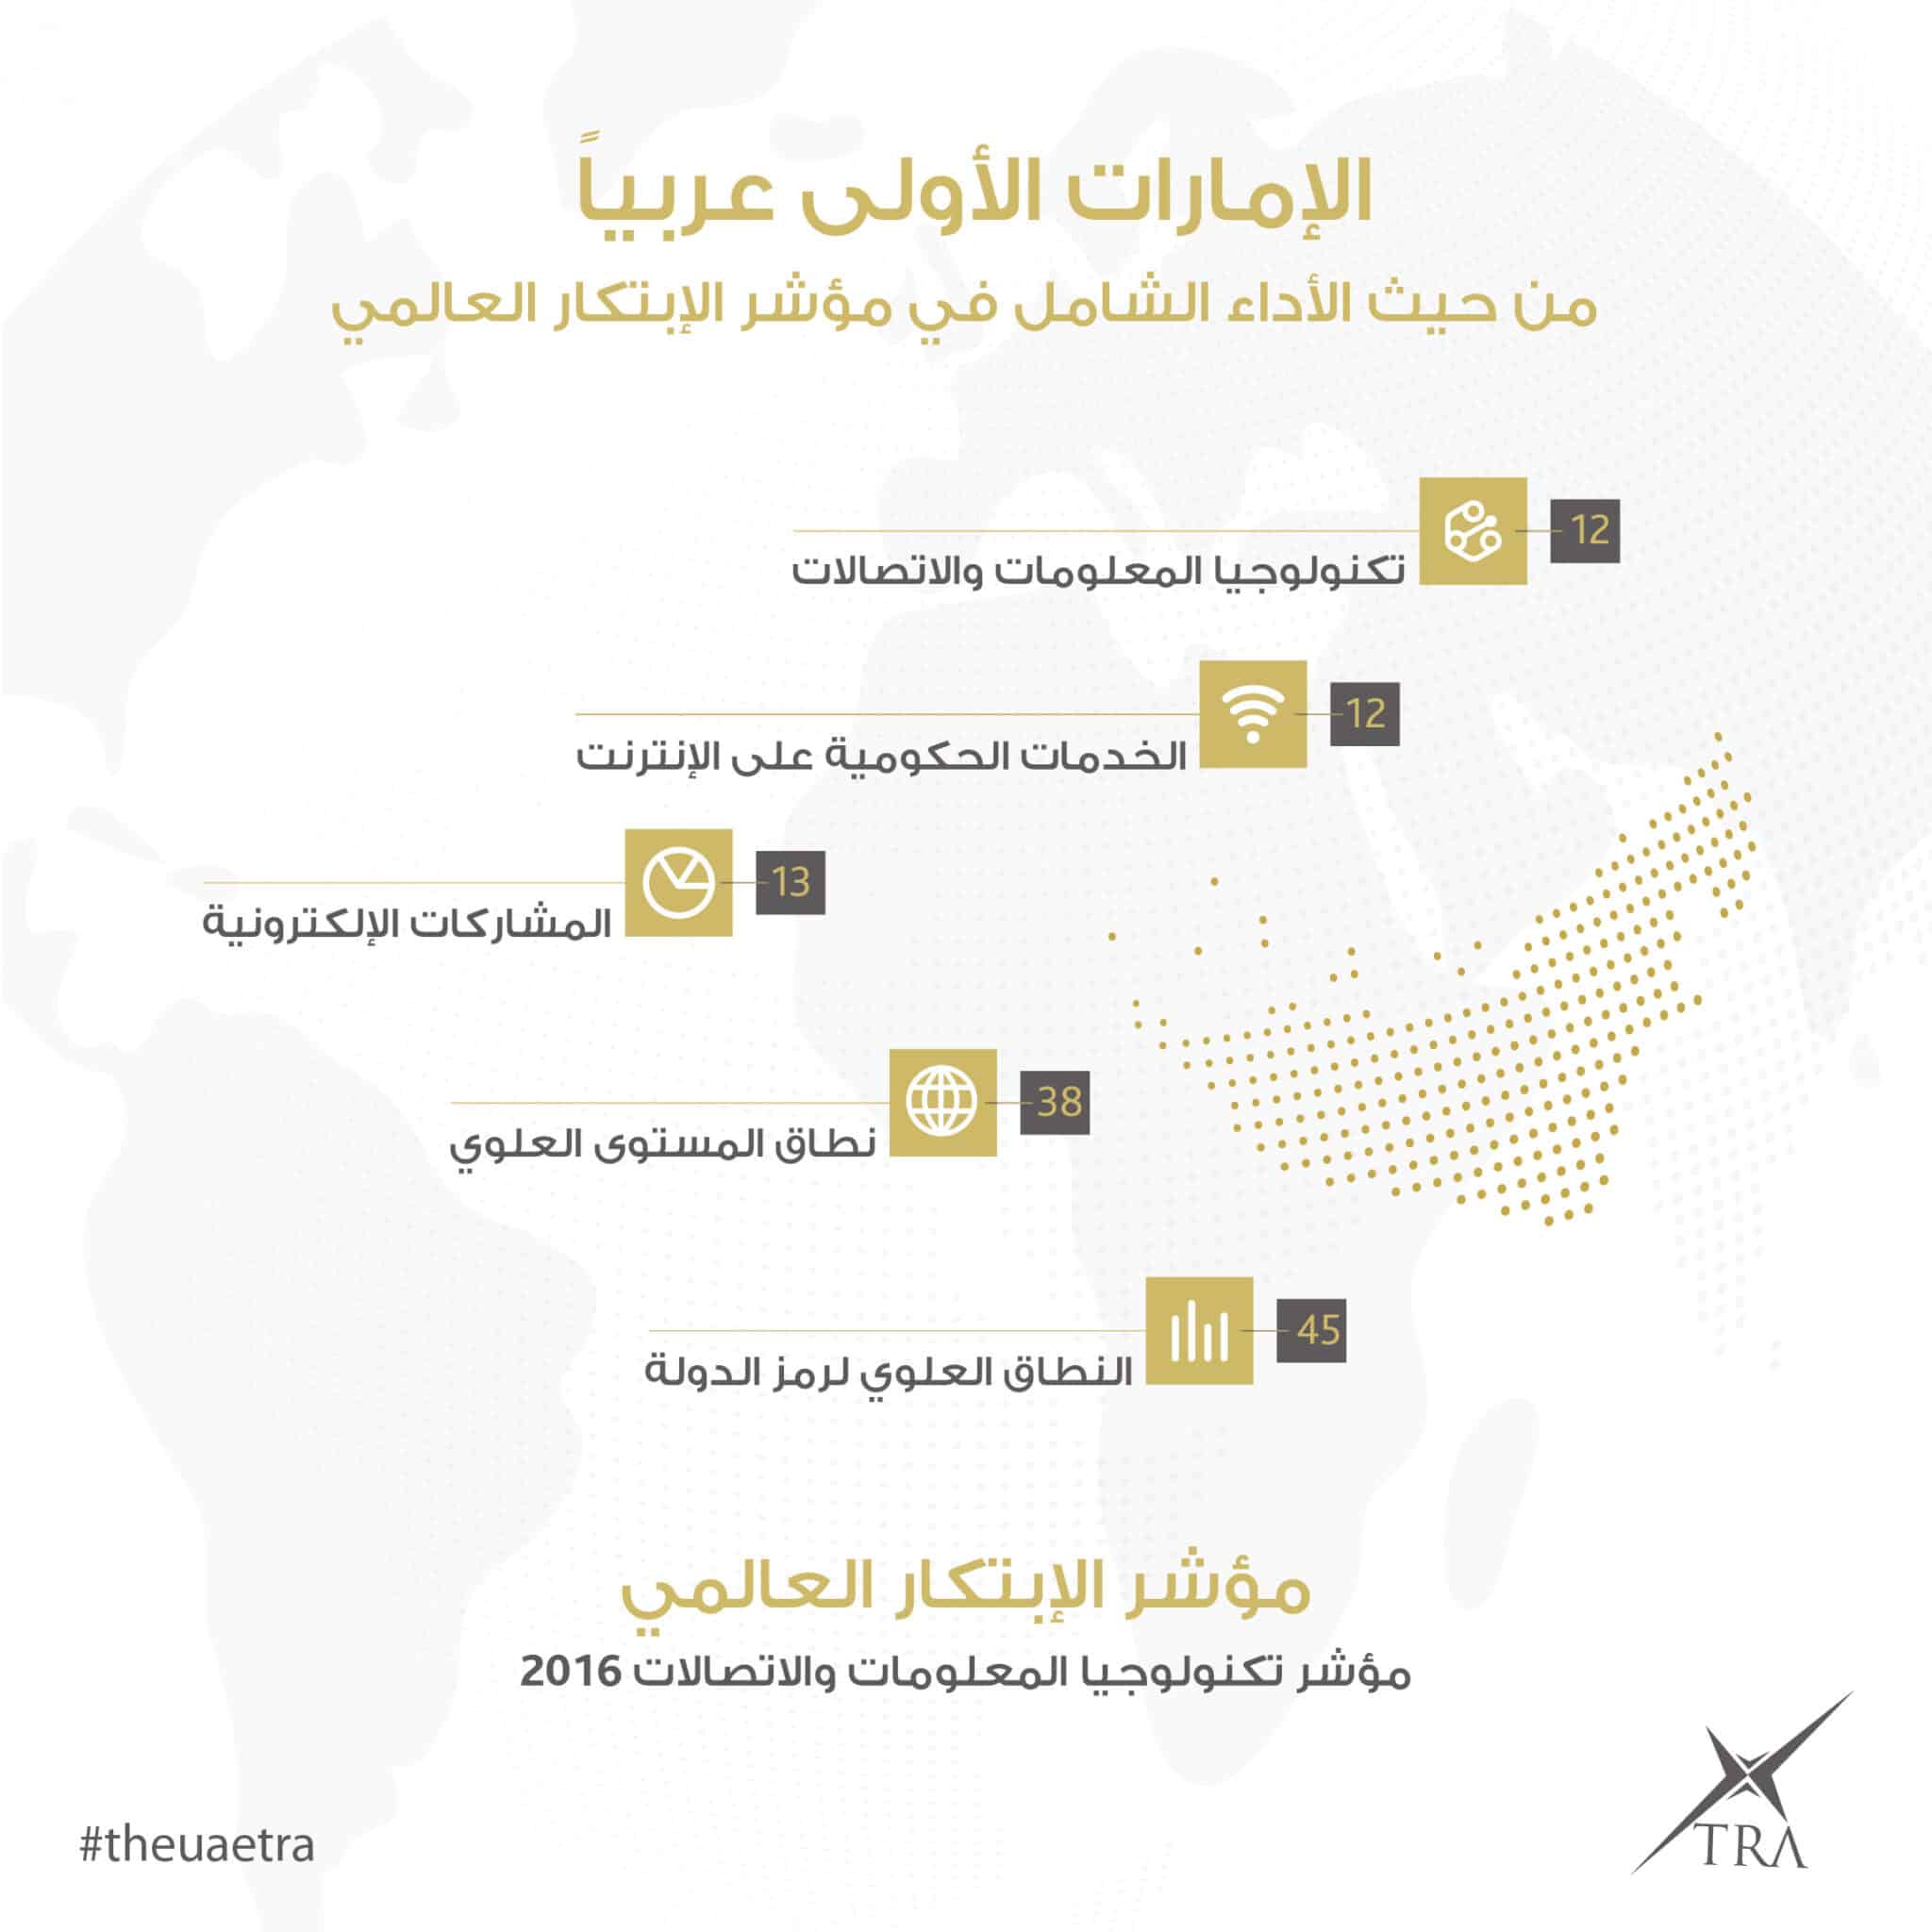 الإمارات تحقق المركز الـ 12 عالميا في مؤشر الاتصالات وتكنولوجيا المعلومات